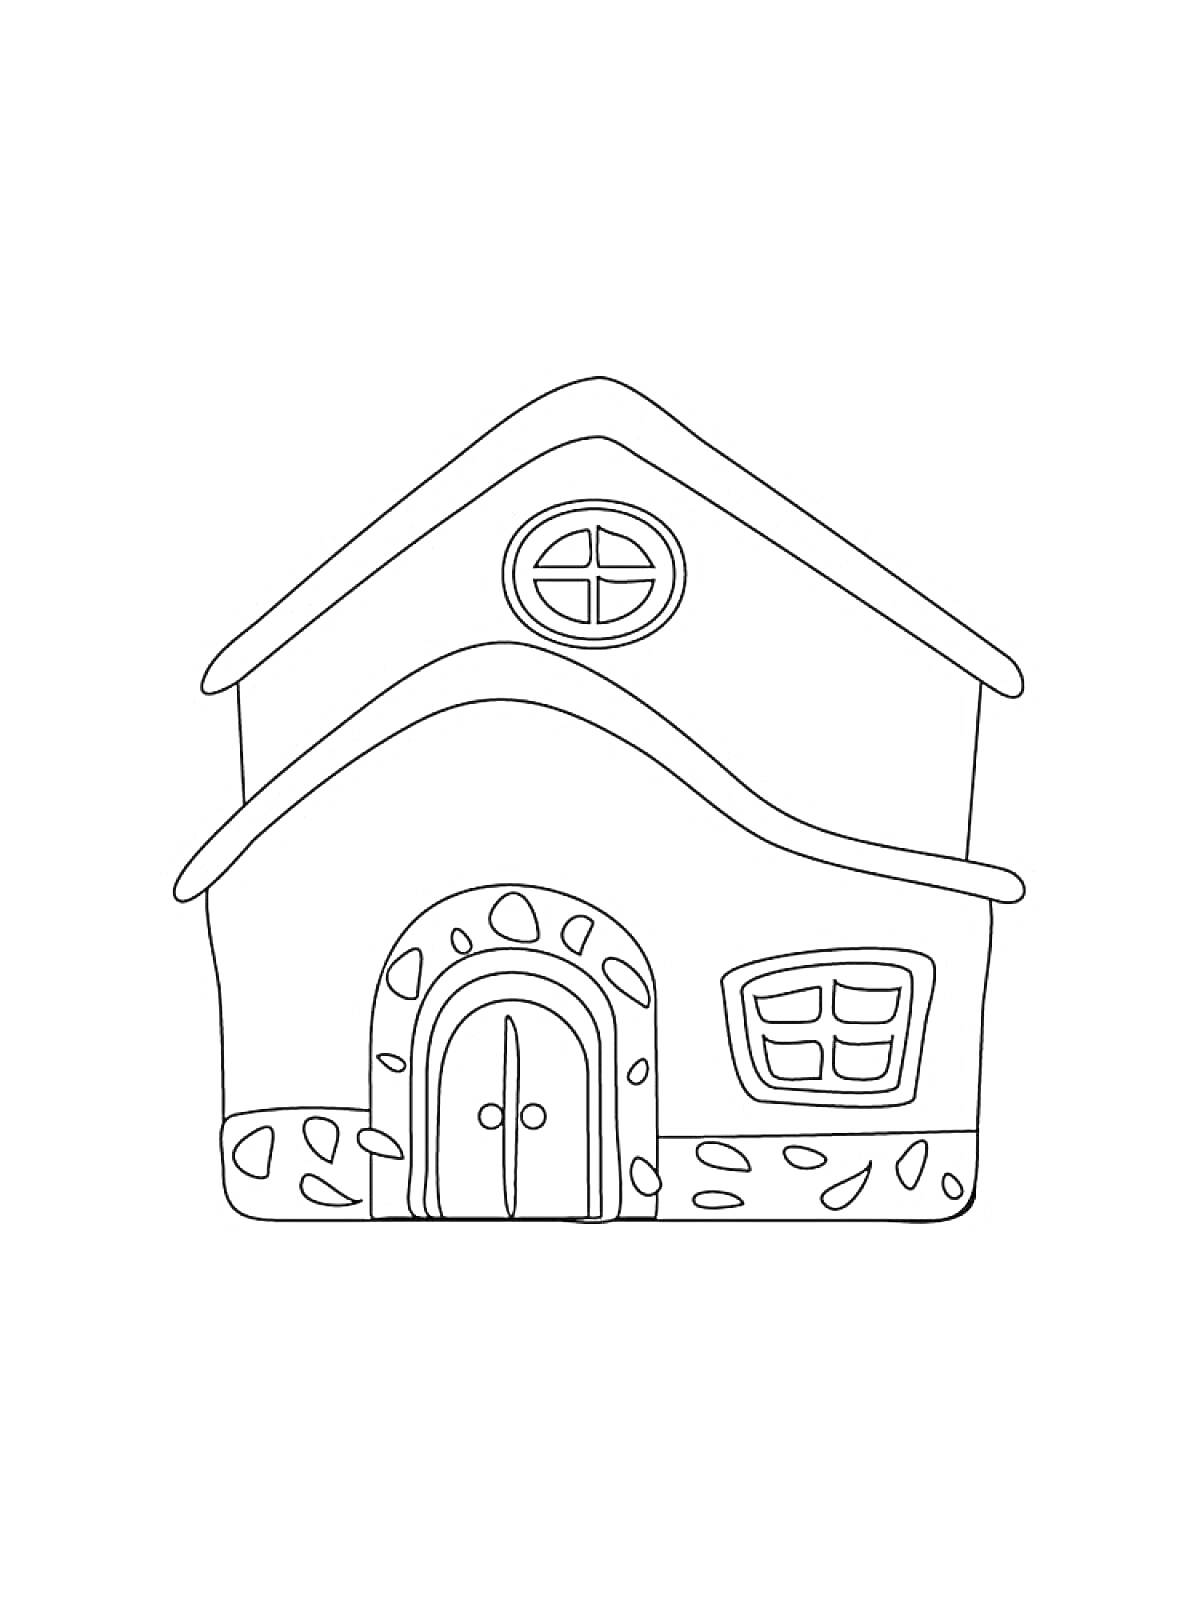 Раскраска Дом с круглым окном наверху, дверью и квадратным окном внизу, с рисунком камней на фасаде